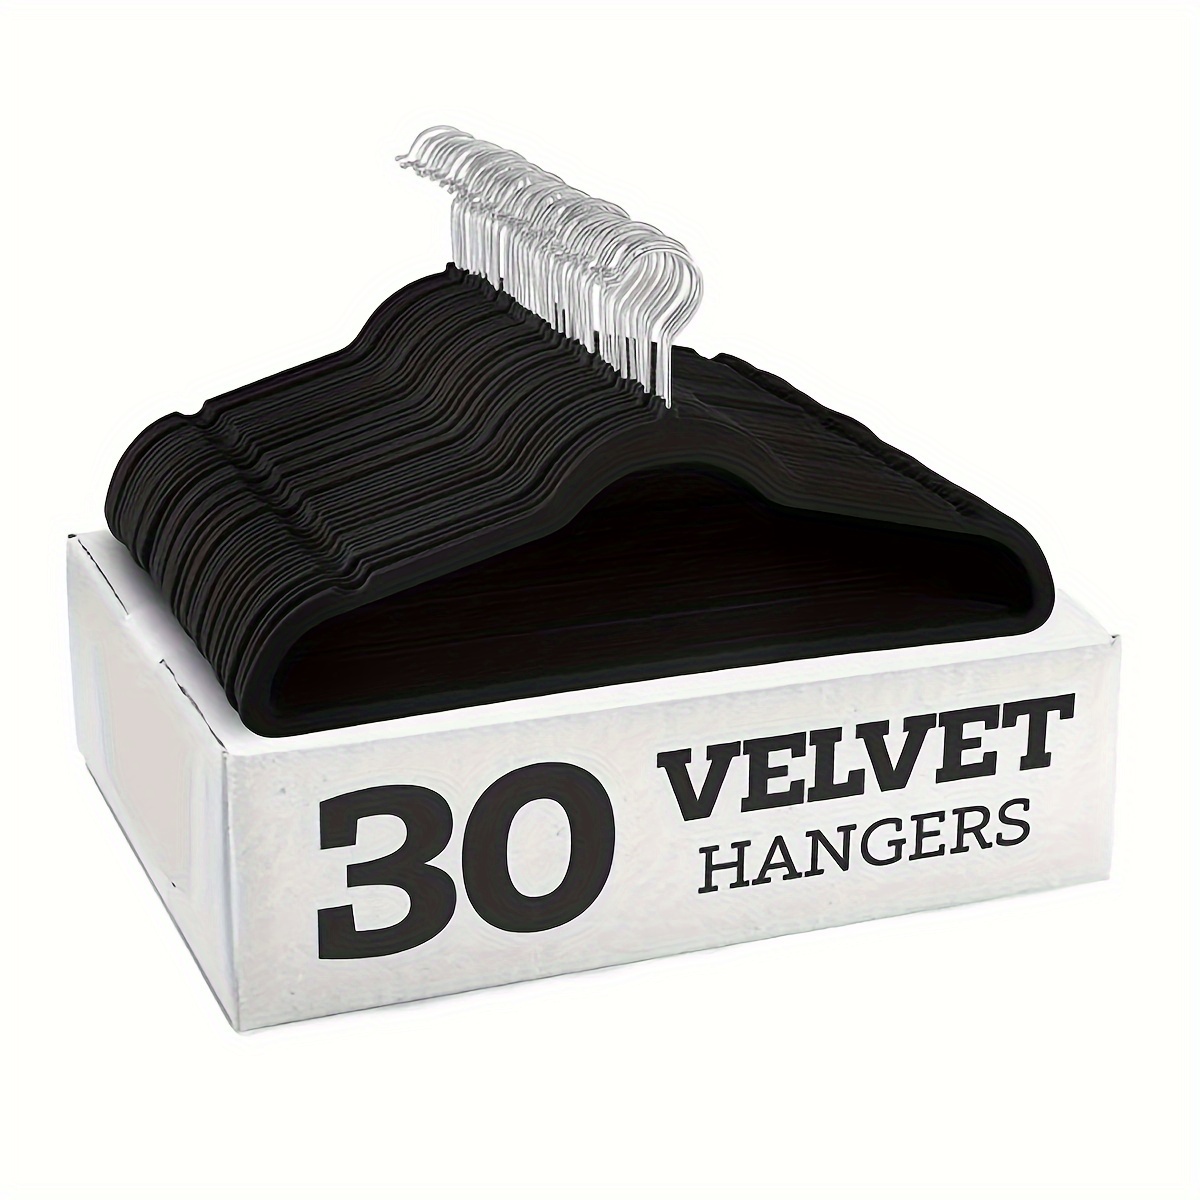 Basics Kids Velvet Hangers - 30 Pack, Beige